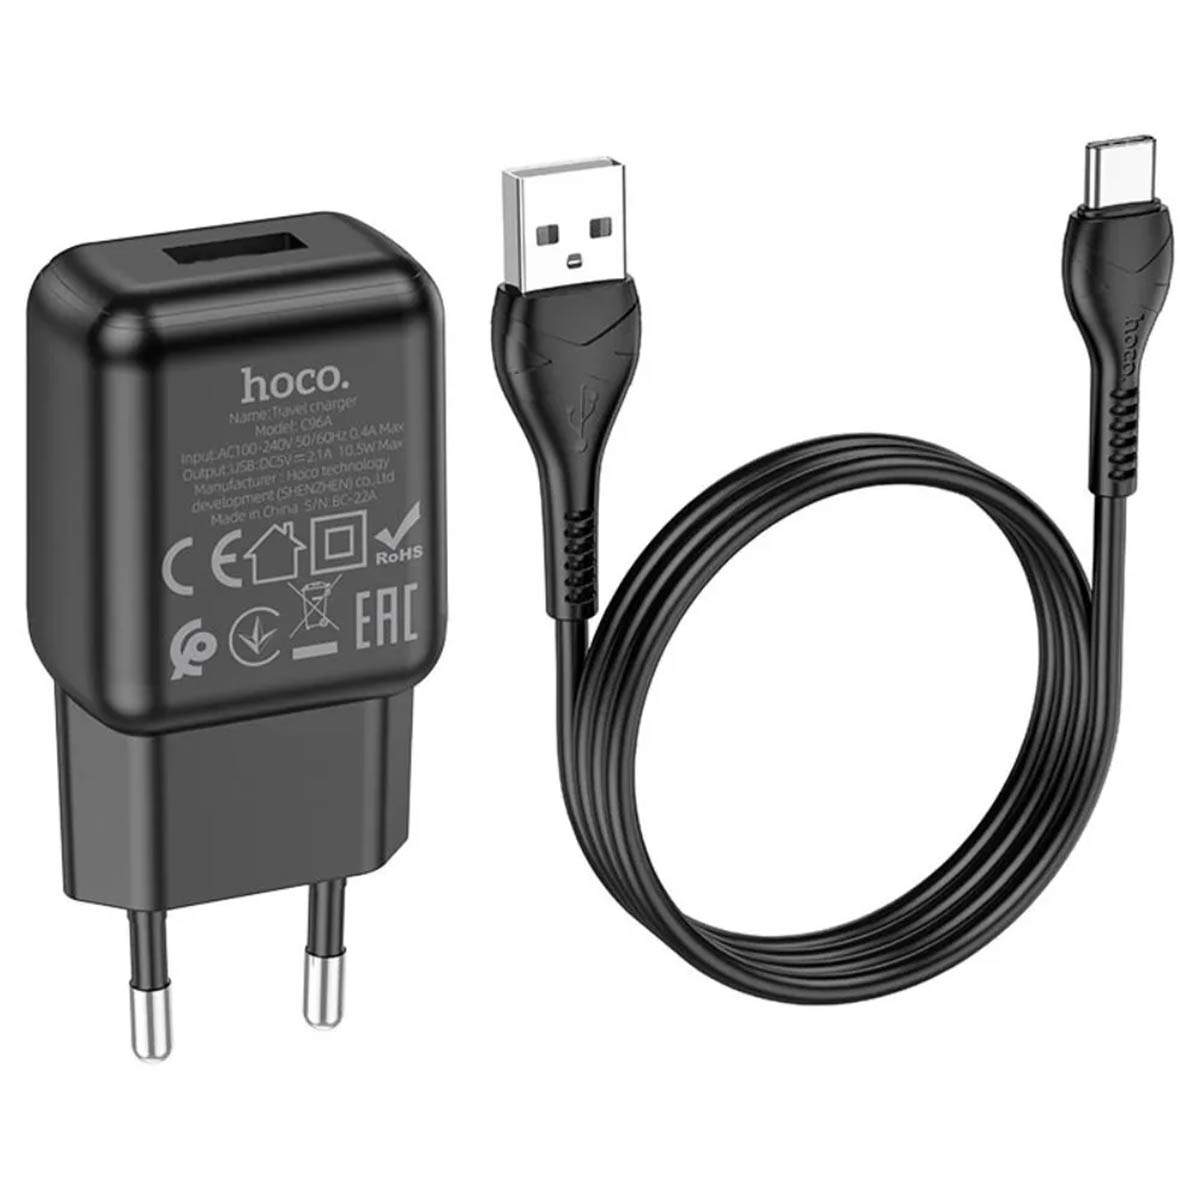 СЗУ (сетевое зарядное устройство) HOCO C96A, адаптер 1 USB 5V-2.1A, кабель Type C, цвет черный